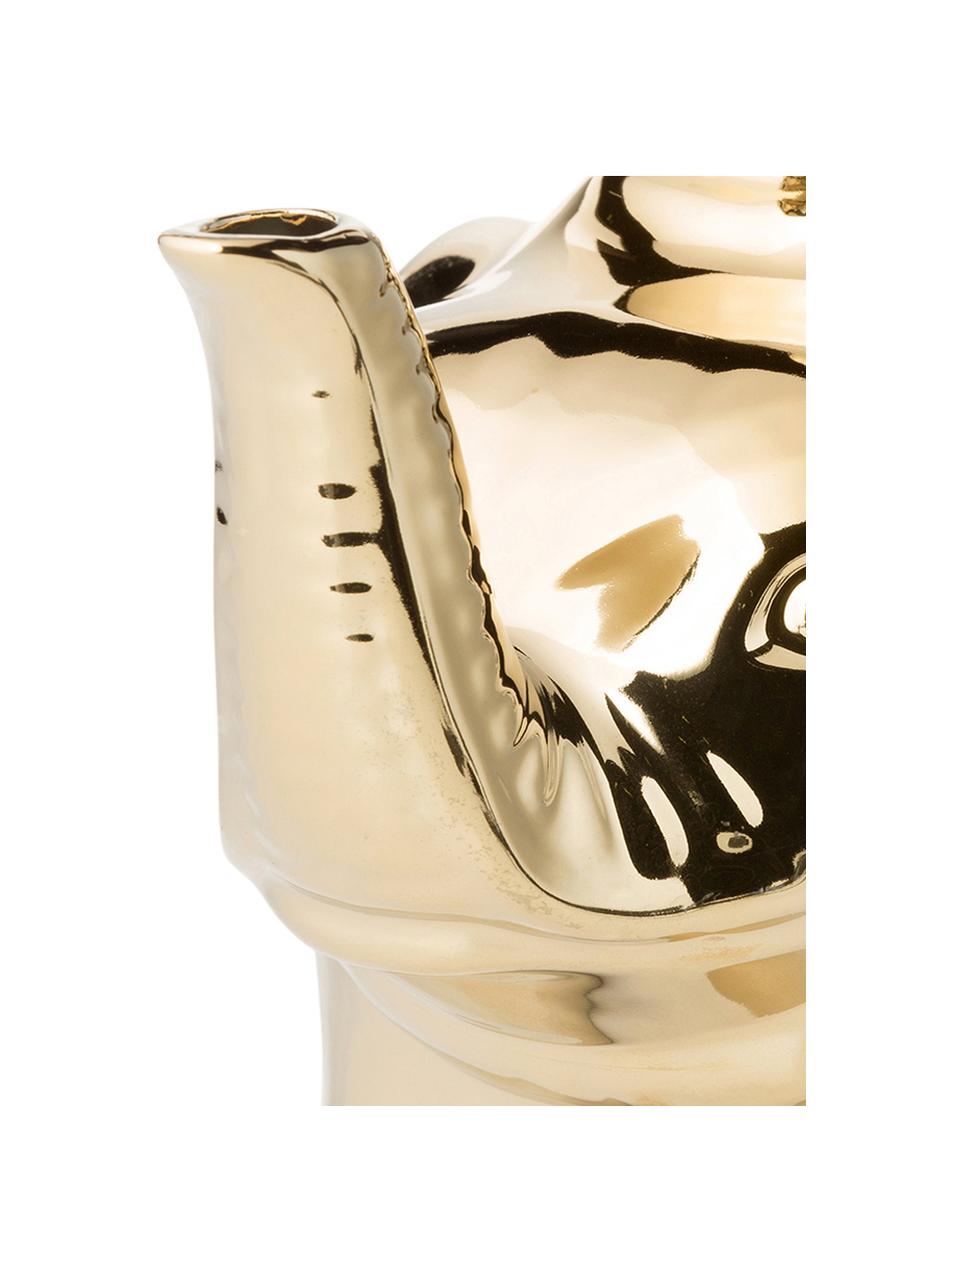 Czajnik z ceramiki Elephant, 900 ml, Ceramika, Odcienie złotego, 900 ml